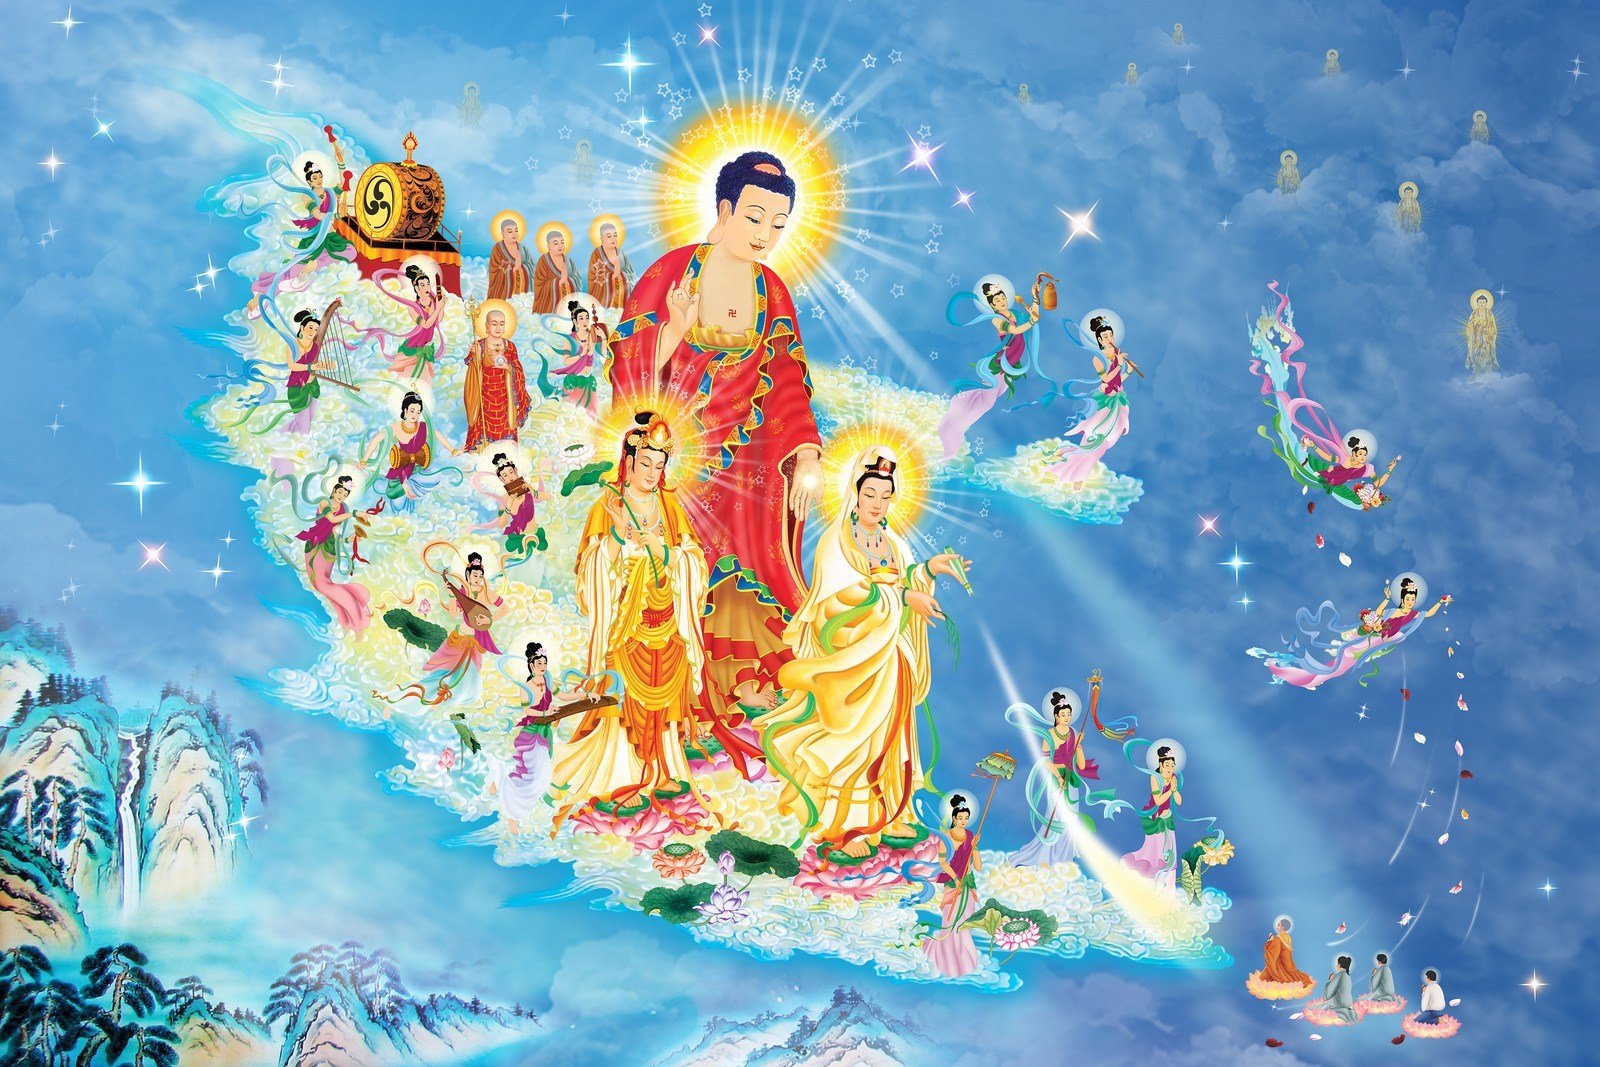 Hãy cùng chiêm ngưỡng bức tượng Đức Phật A Di Đà - một biểu tượng vô cùng linh thiêng trong đạo Phật. Với đôi mắt tỏa sáng và đôi tay nâng lên khai oán, bức tượng này sẽ khiến bạn cảm thấy yên bình và sạch tâm. Hãy để tinh thần được giải phóng khi ngắm nhìn Đức Phật A Di Đà, bạn sẽ không muốn rời mắt khỏi bức tượng này.